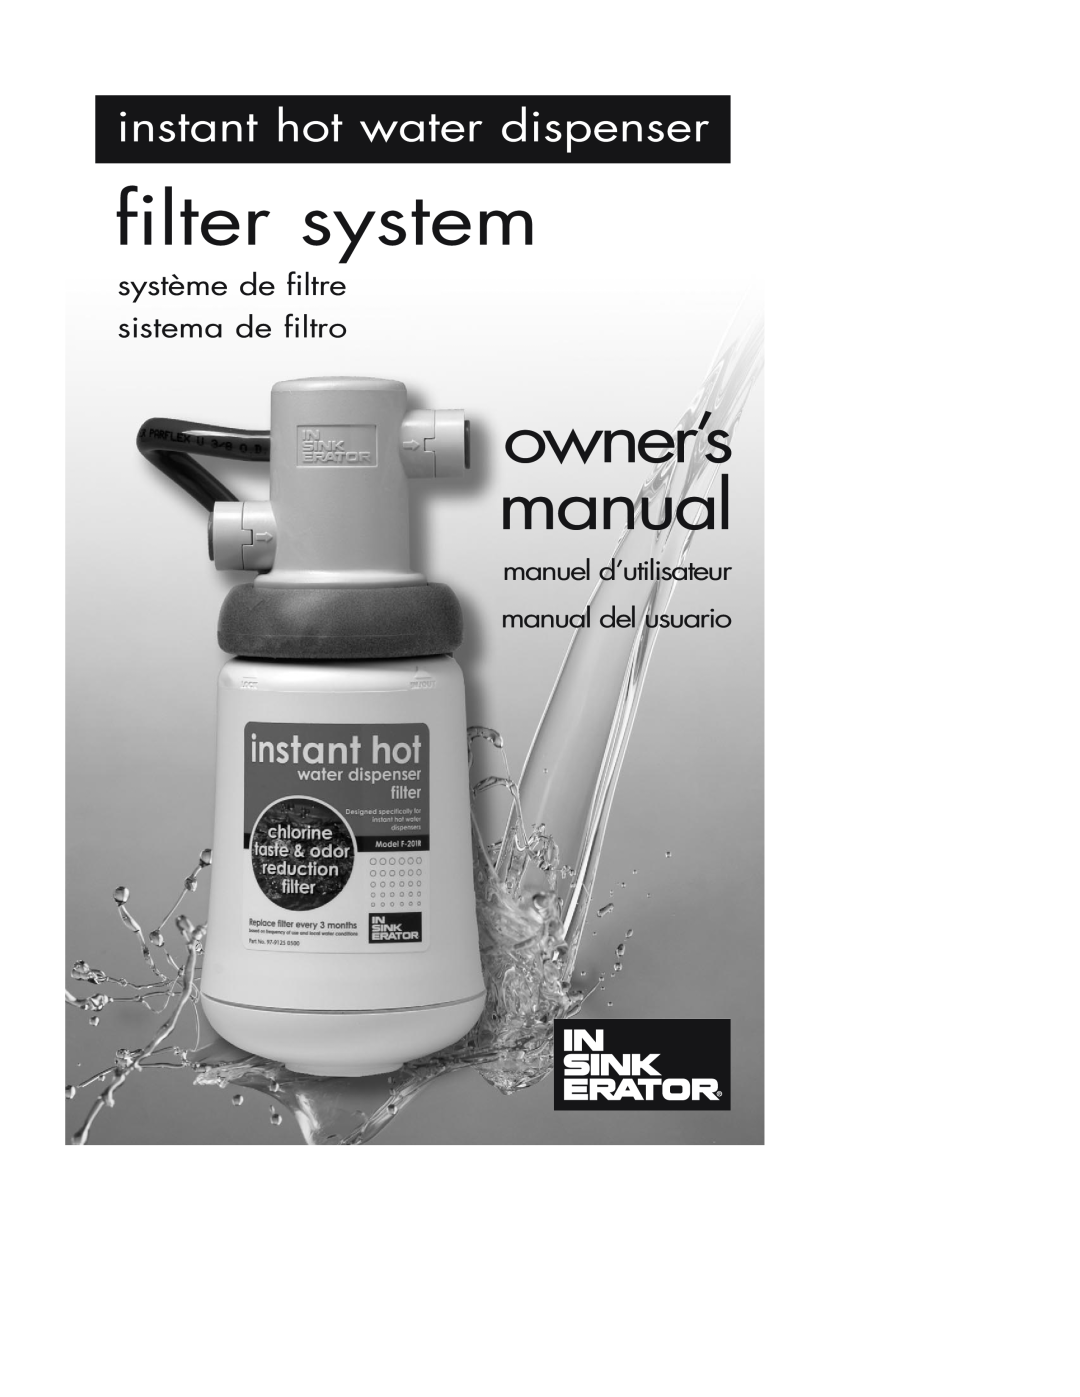 InSinkErator Water Dispenser owner manual filter system, instant hot water dispenser, système de filtre sistema de filtro 